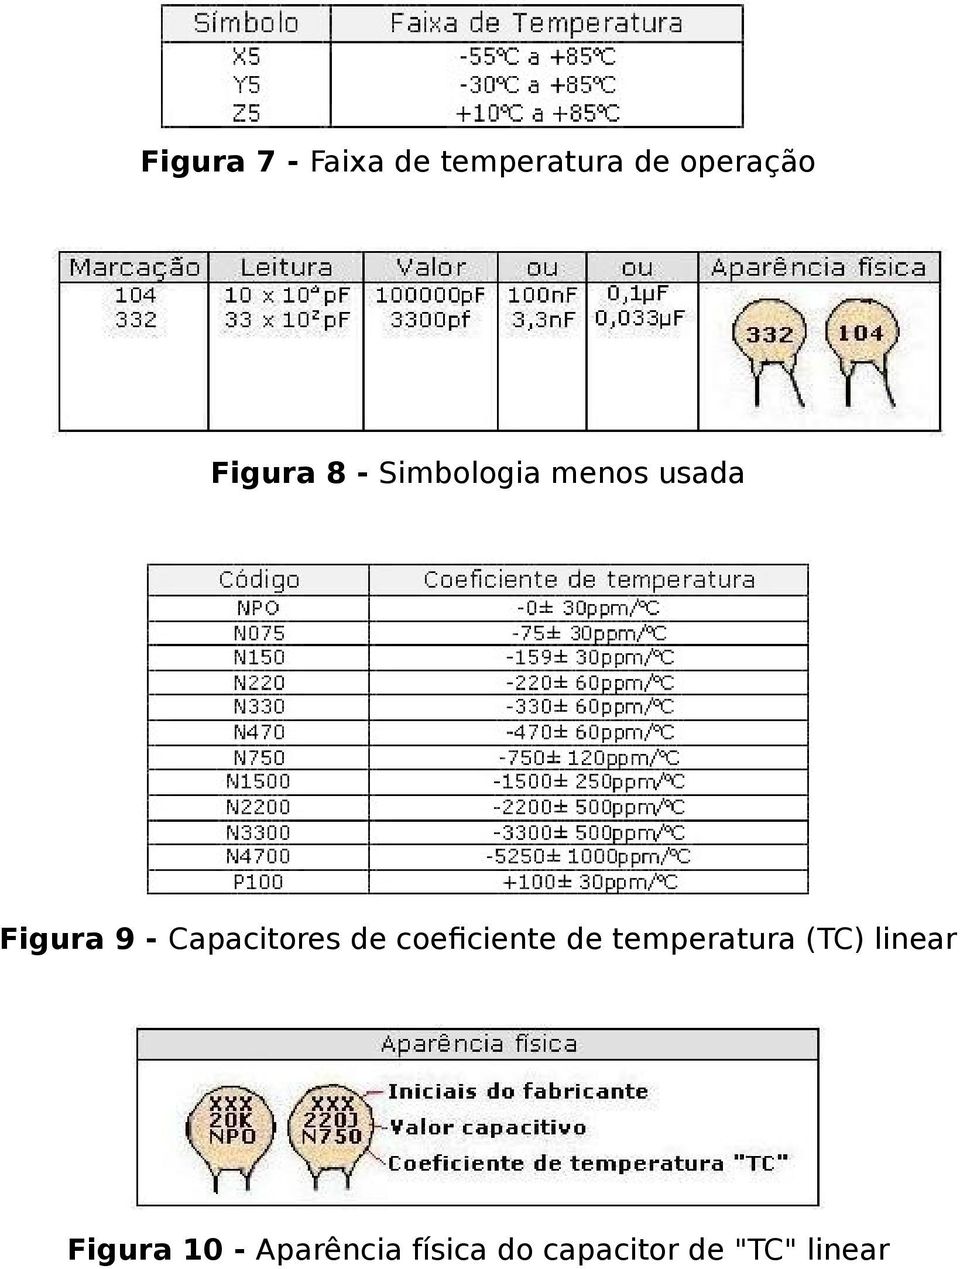 Capacitores de coeficiente de temperatura (TC)